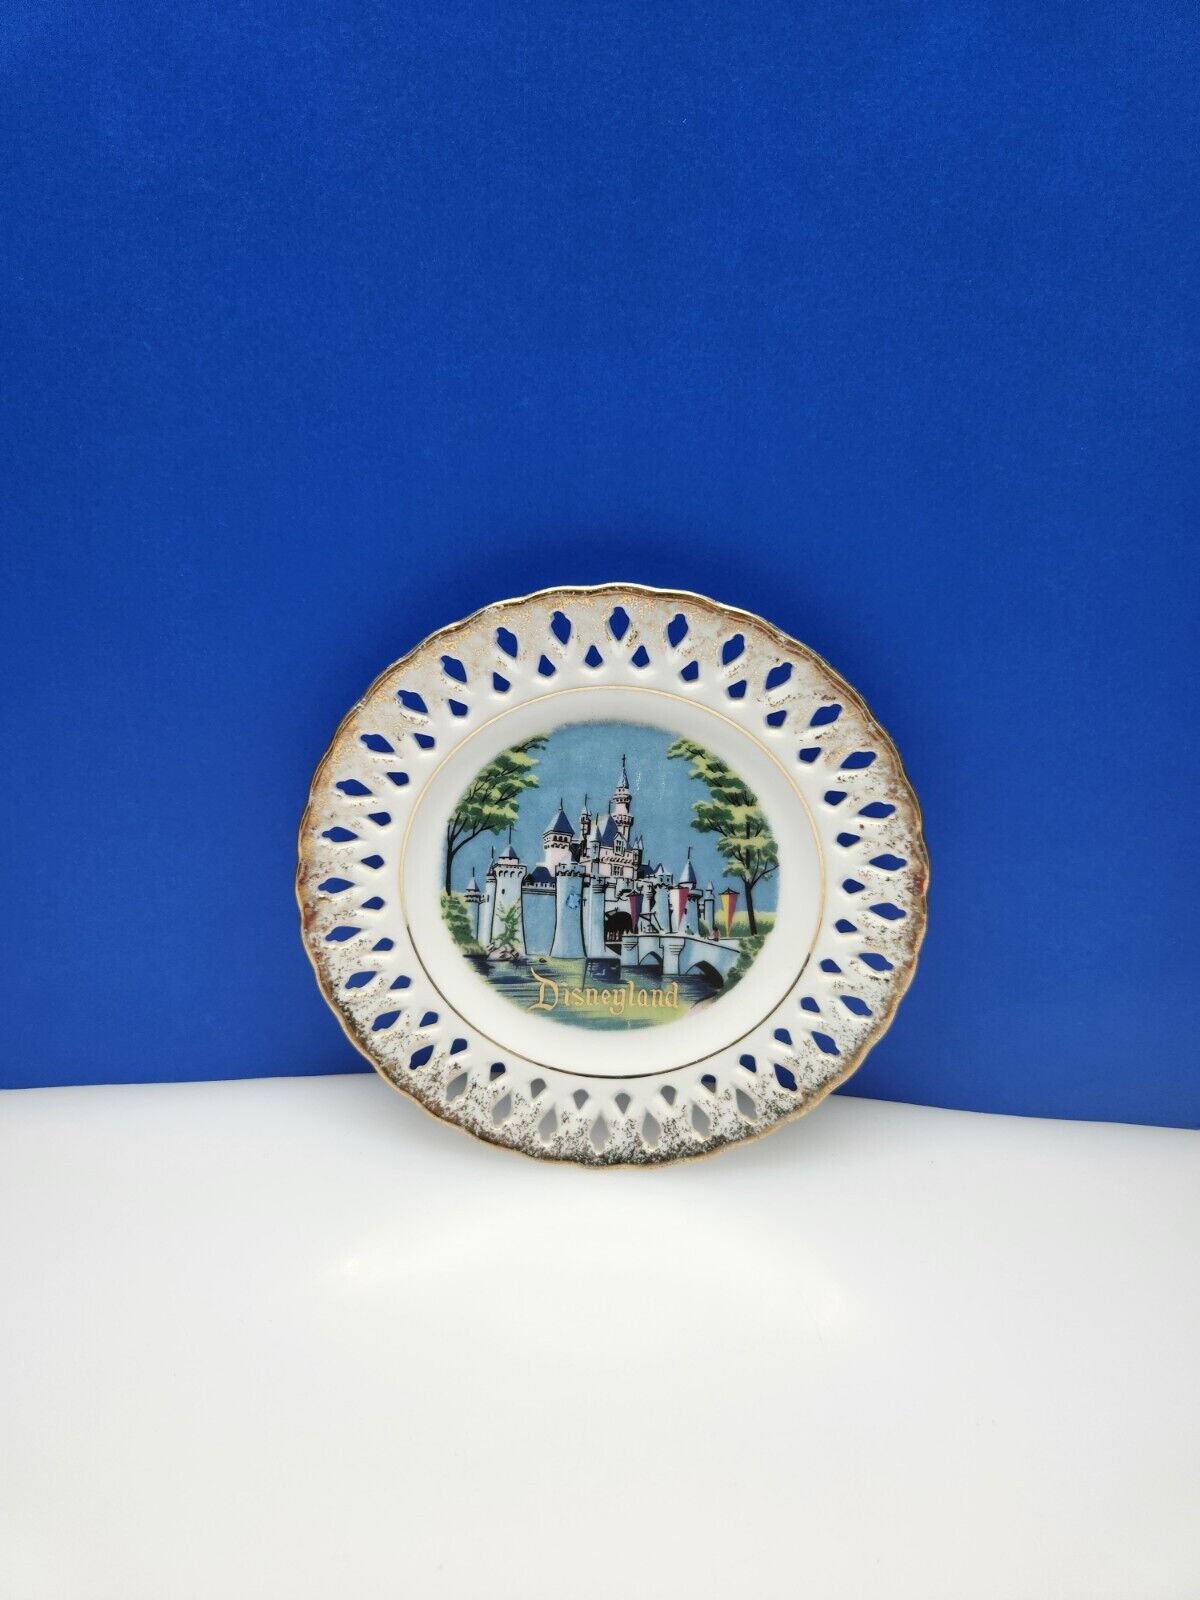 Vintage Disneyland Castle Matterhorn Souvenir Plate Gold Lace Lattice Trim 